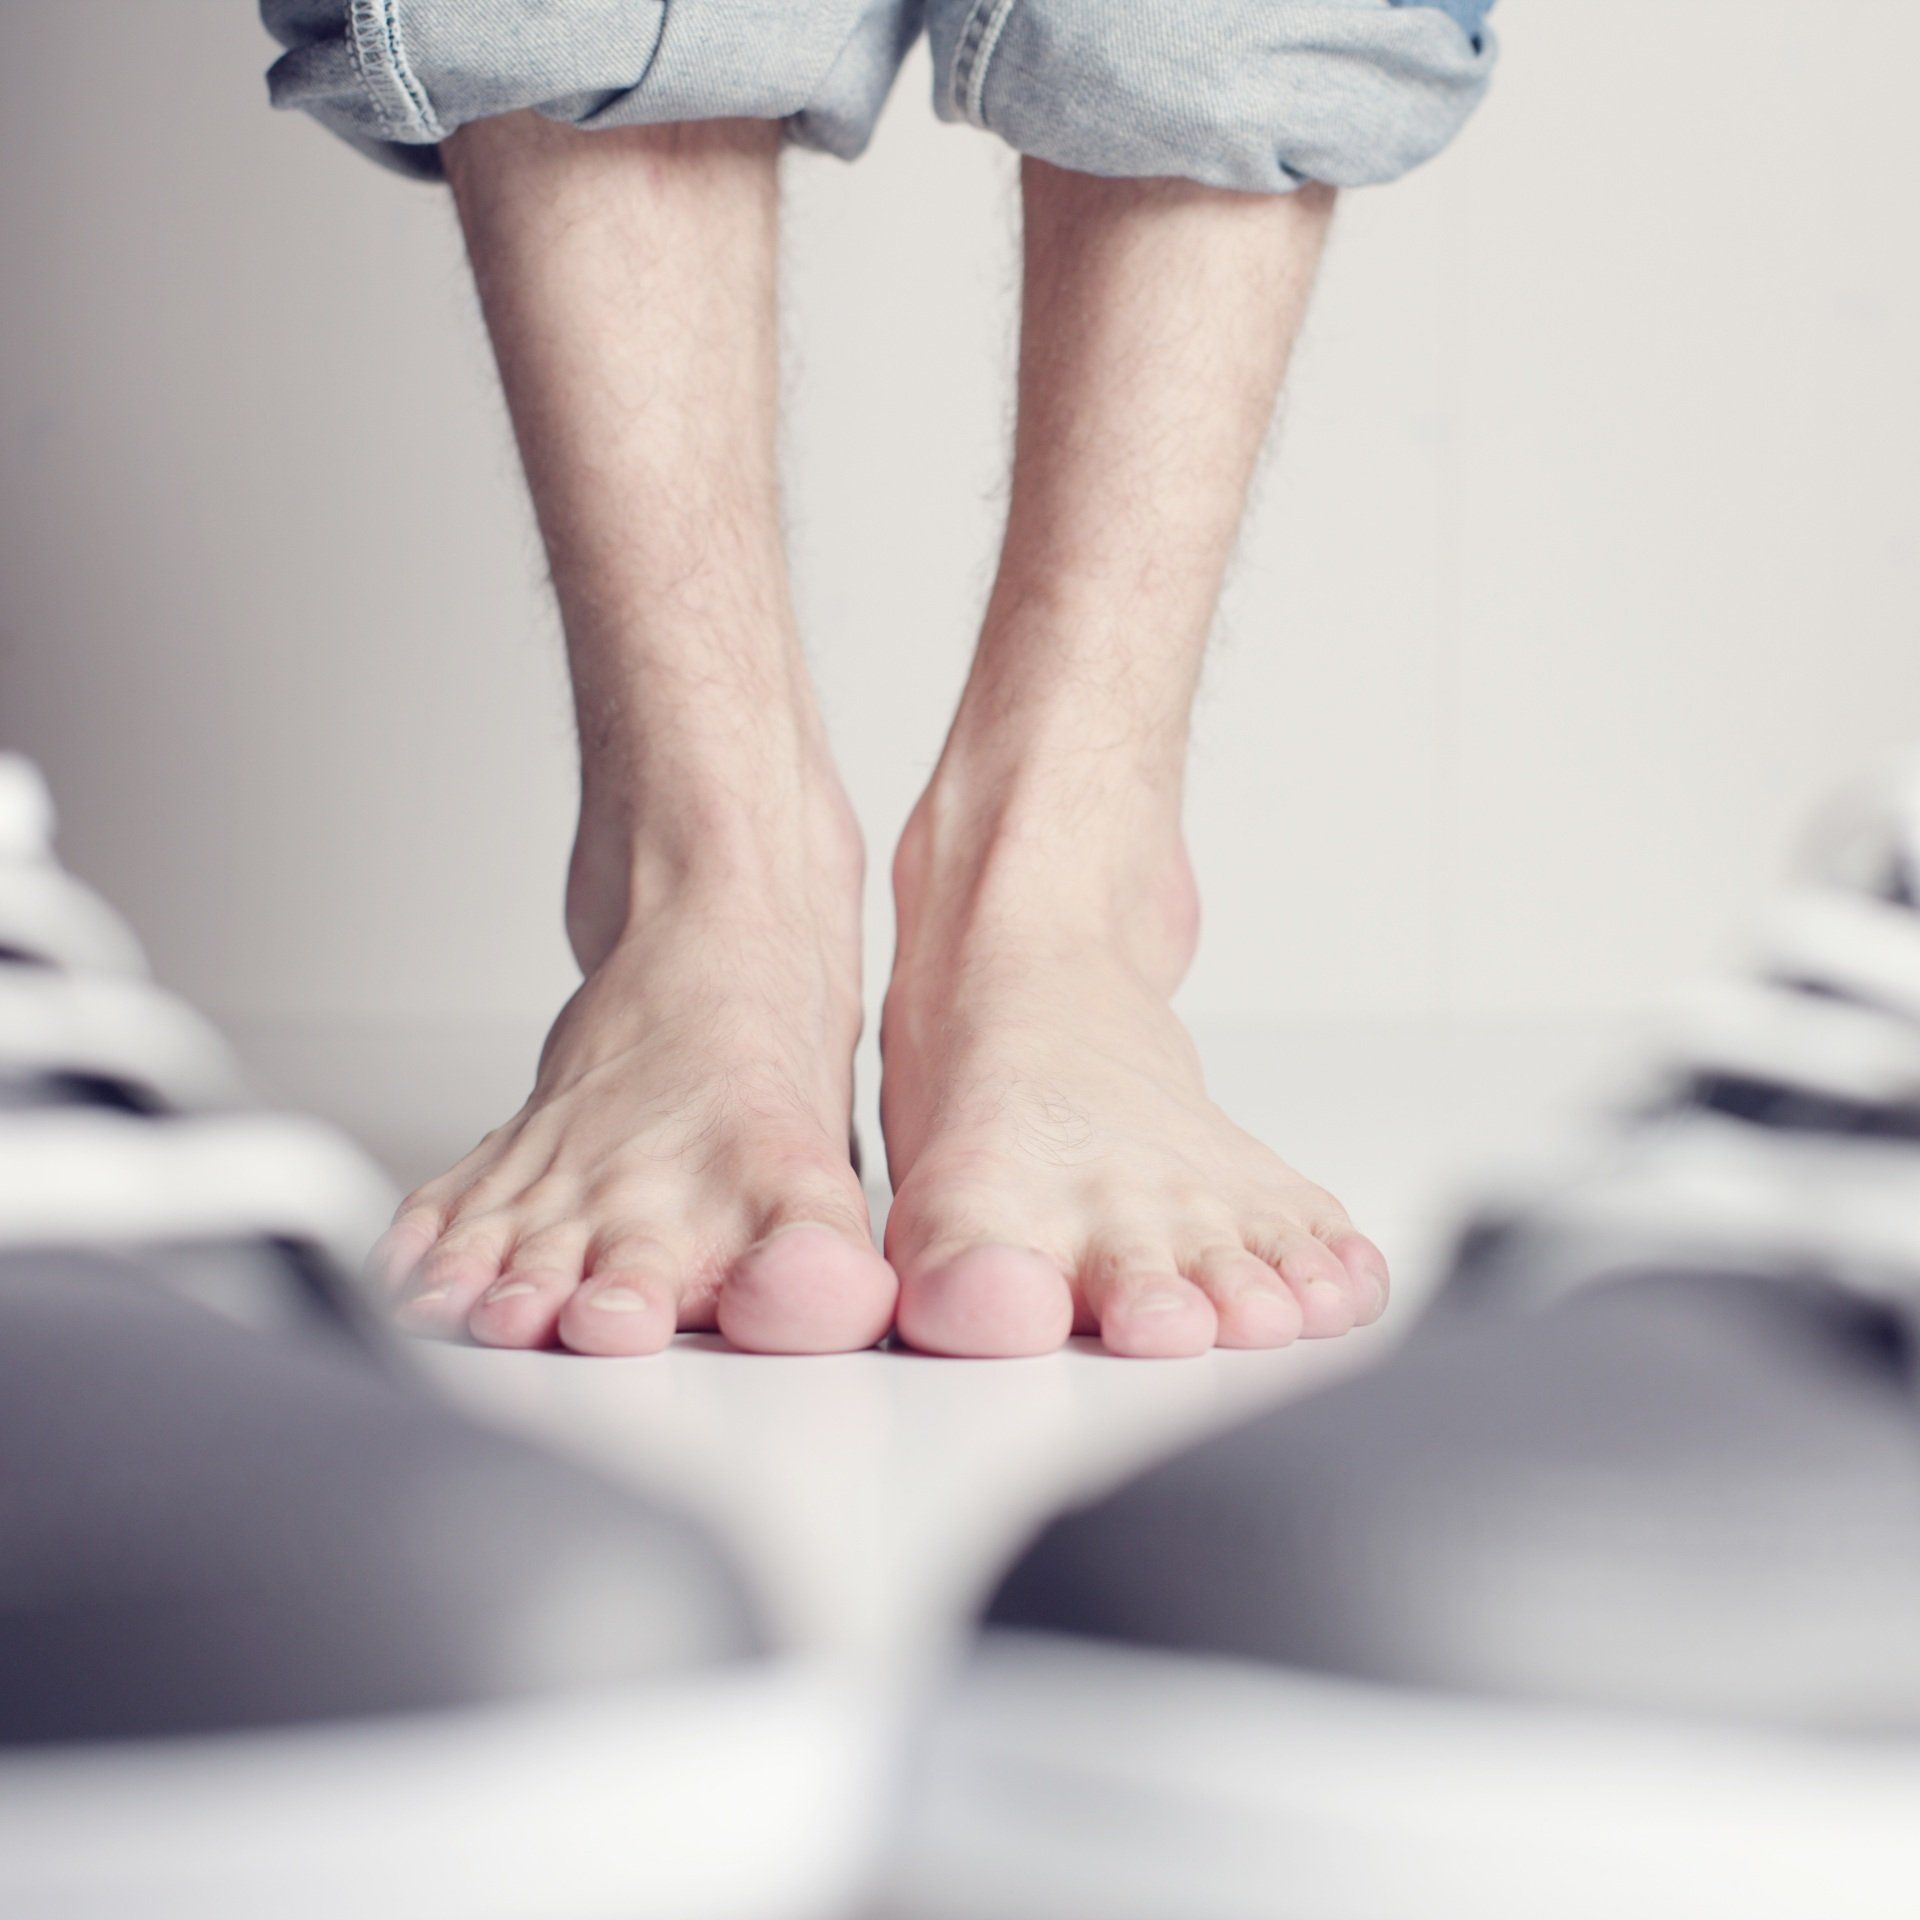 I piedi nudi di una persona sono in piedi accanto a un paio di scarpe